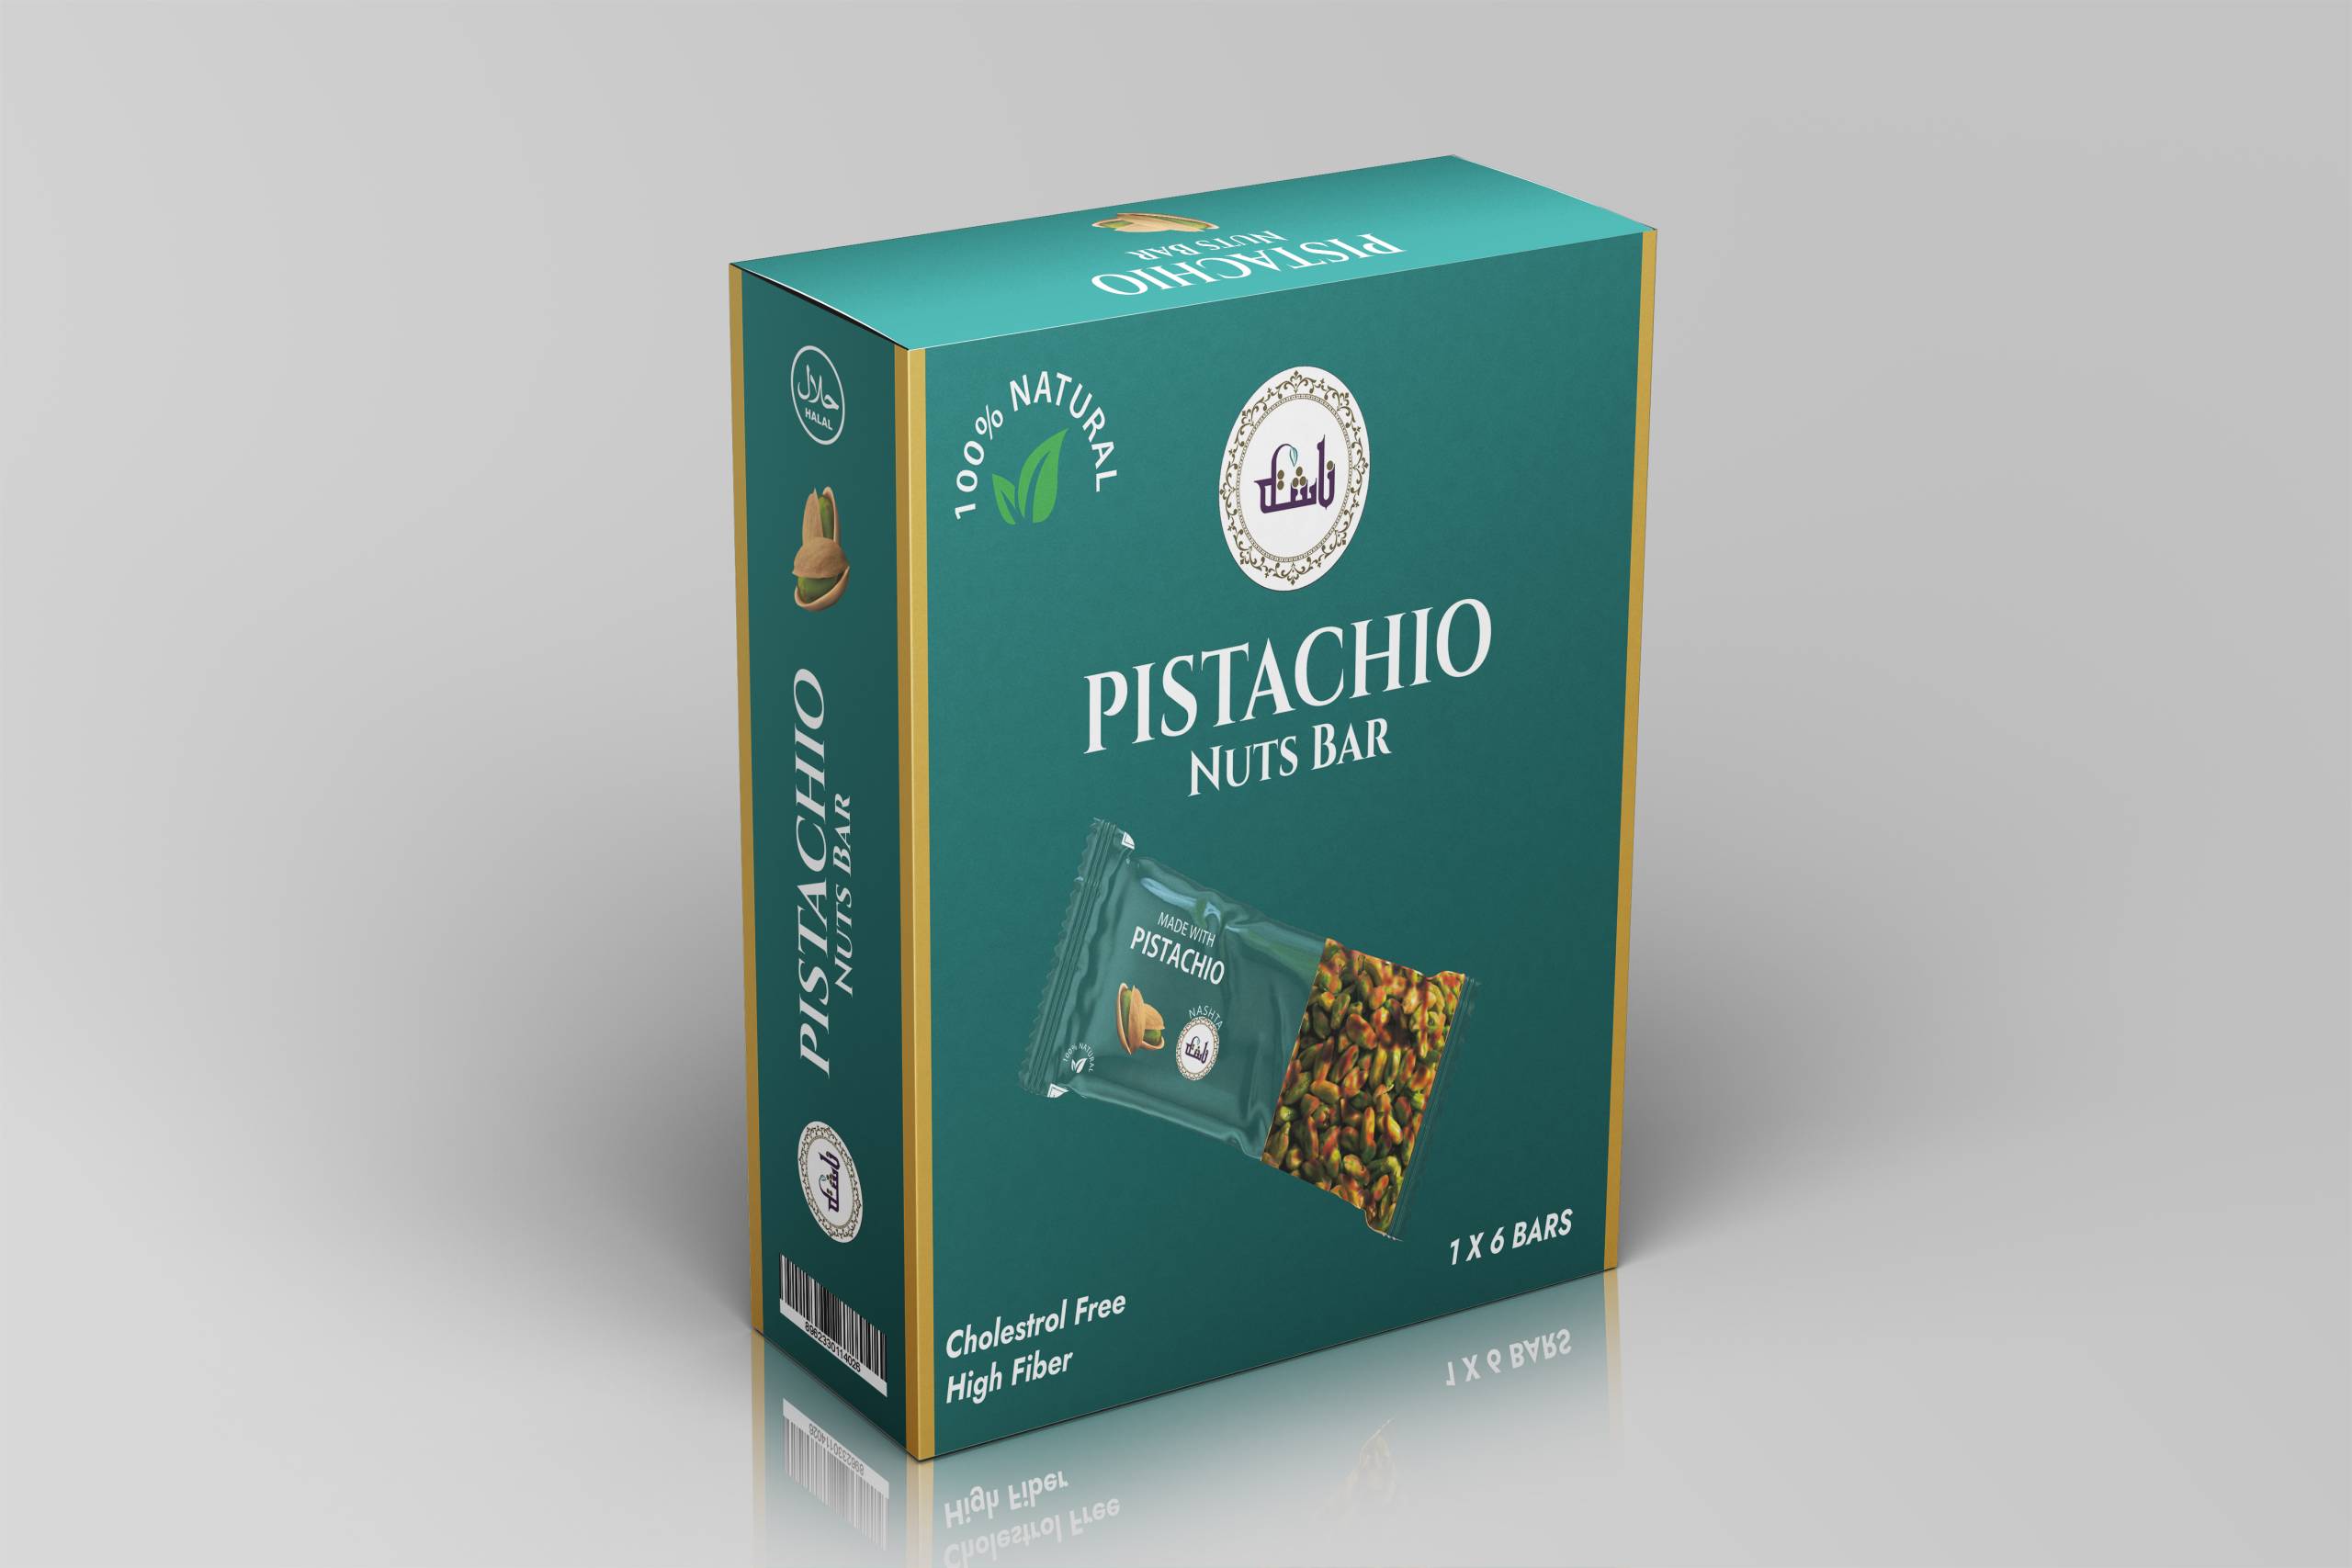 Pistachio Nuts Bar 1x6